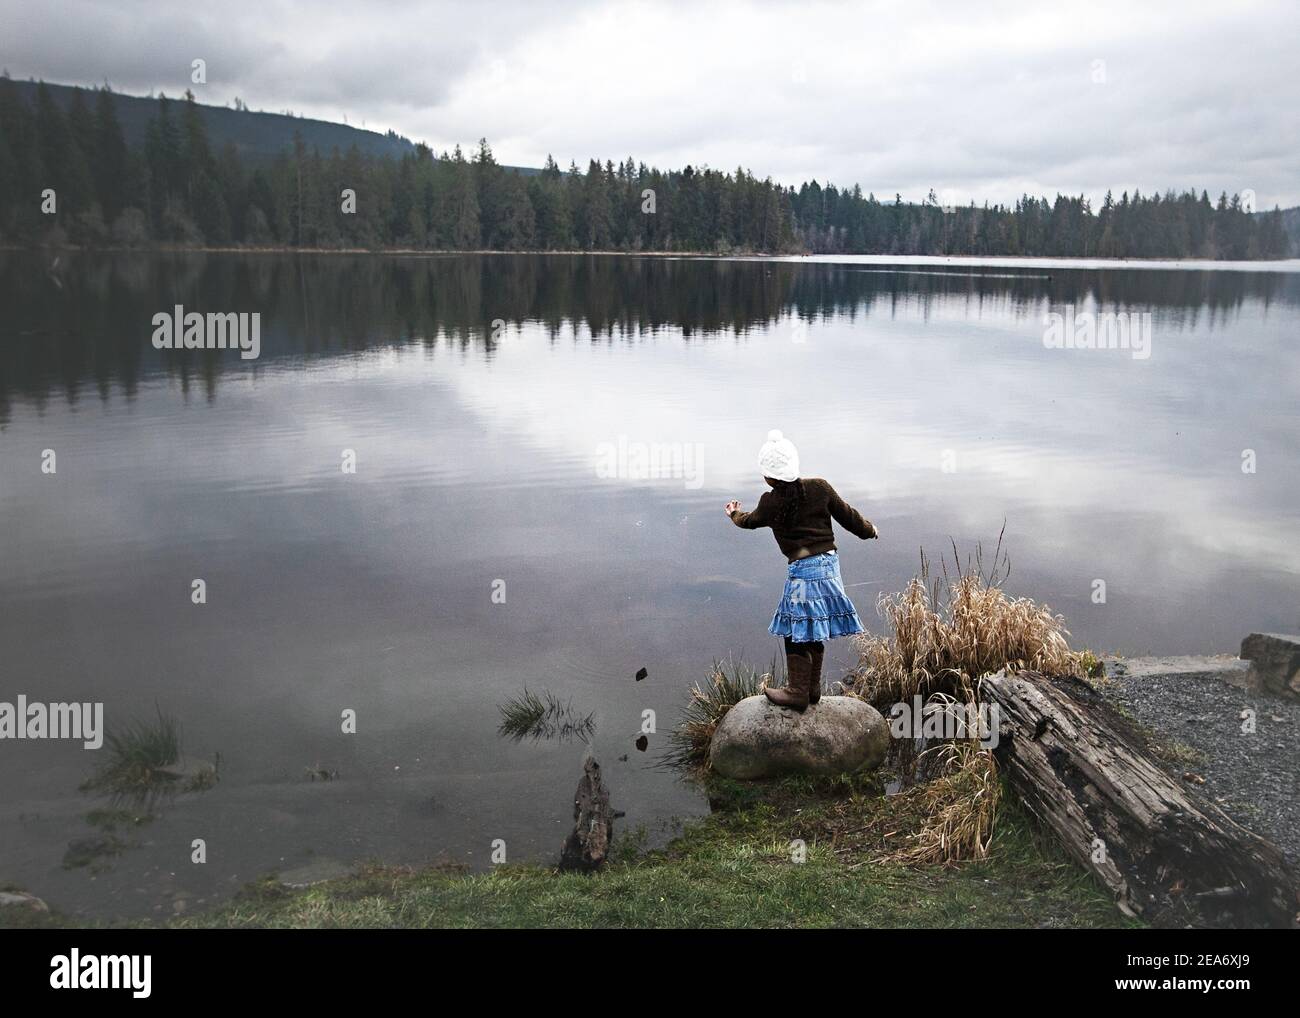 Ragazza che getta le rocce in un lago, Washington state, Stati Uniti Foto Stock